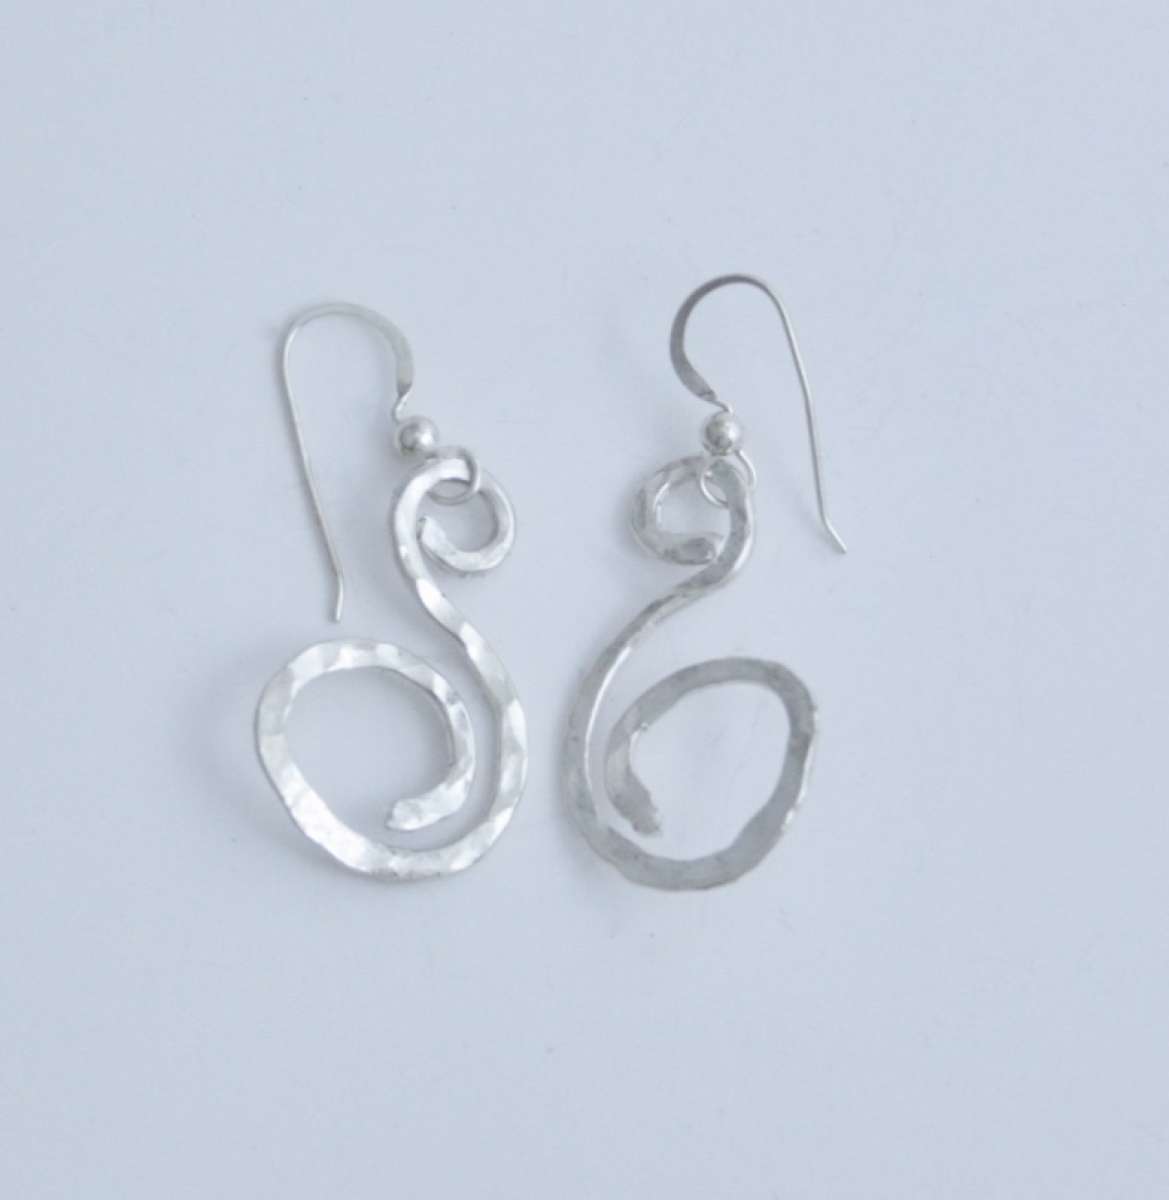 Petite Swirl Earrings